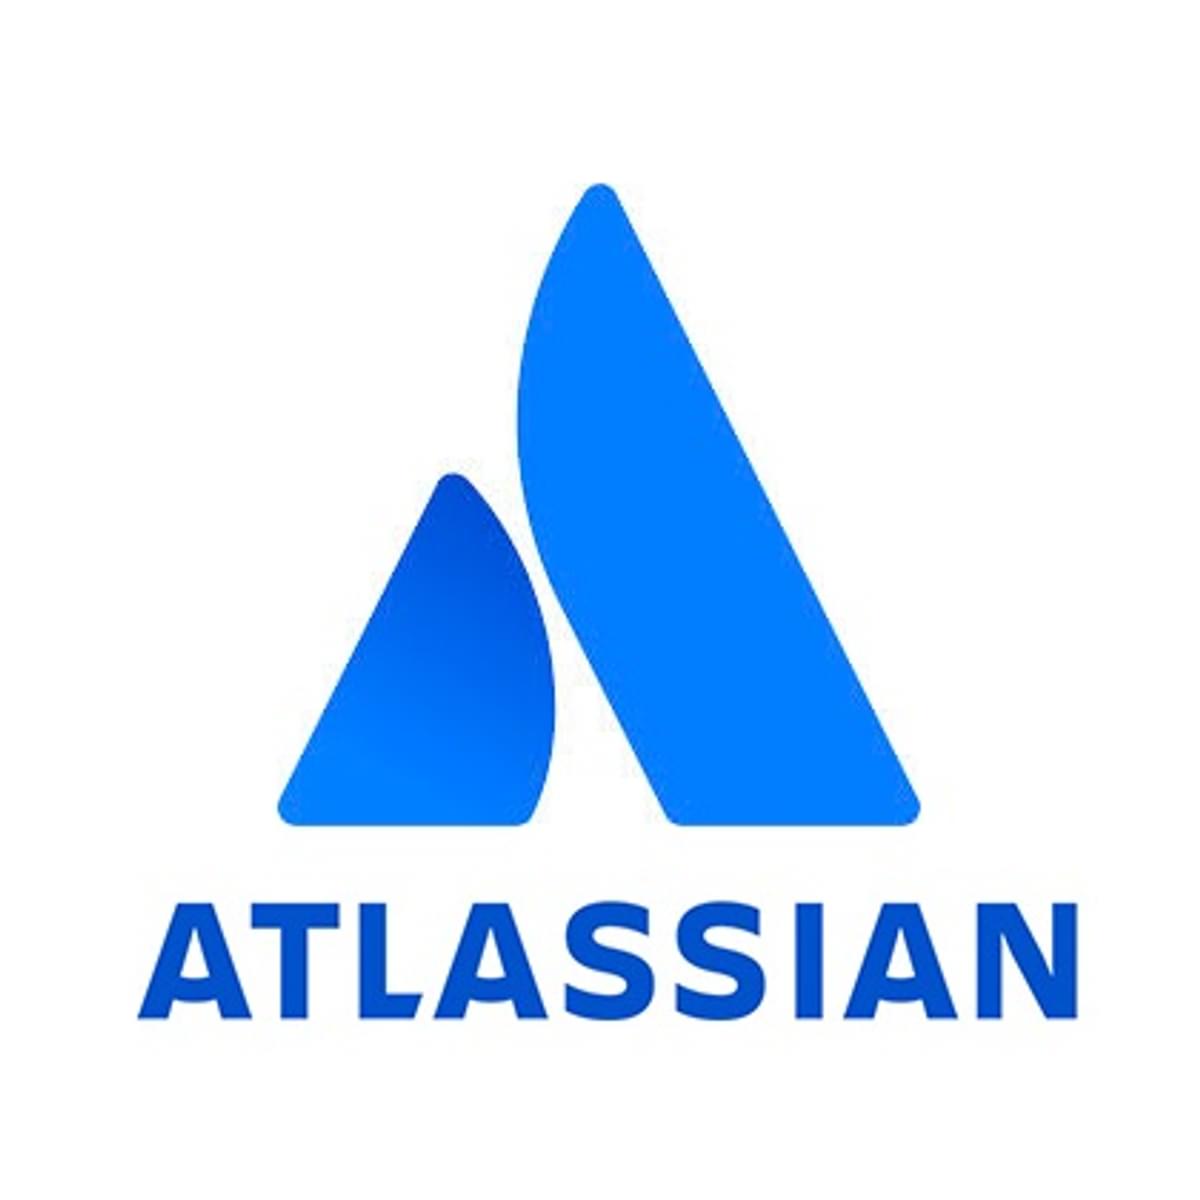 Atlassian koopt datavisualisatie specialist Chartio image